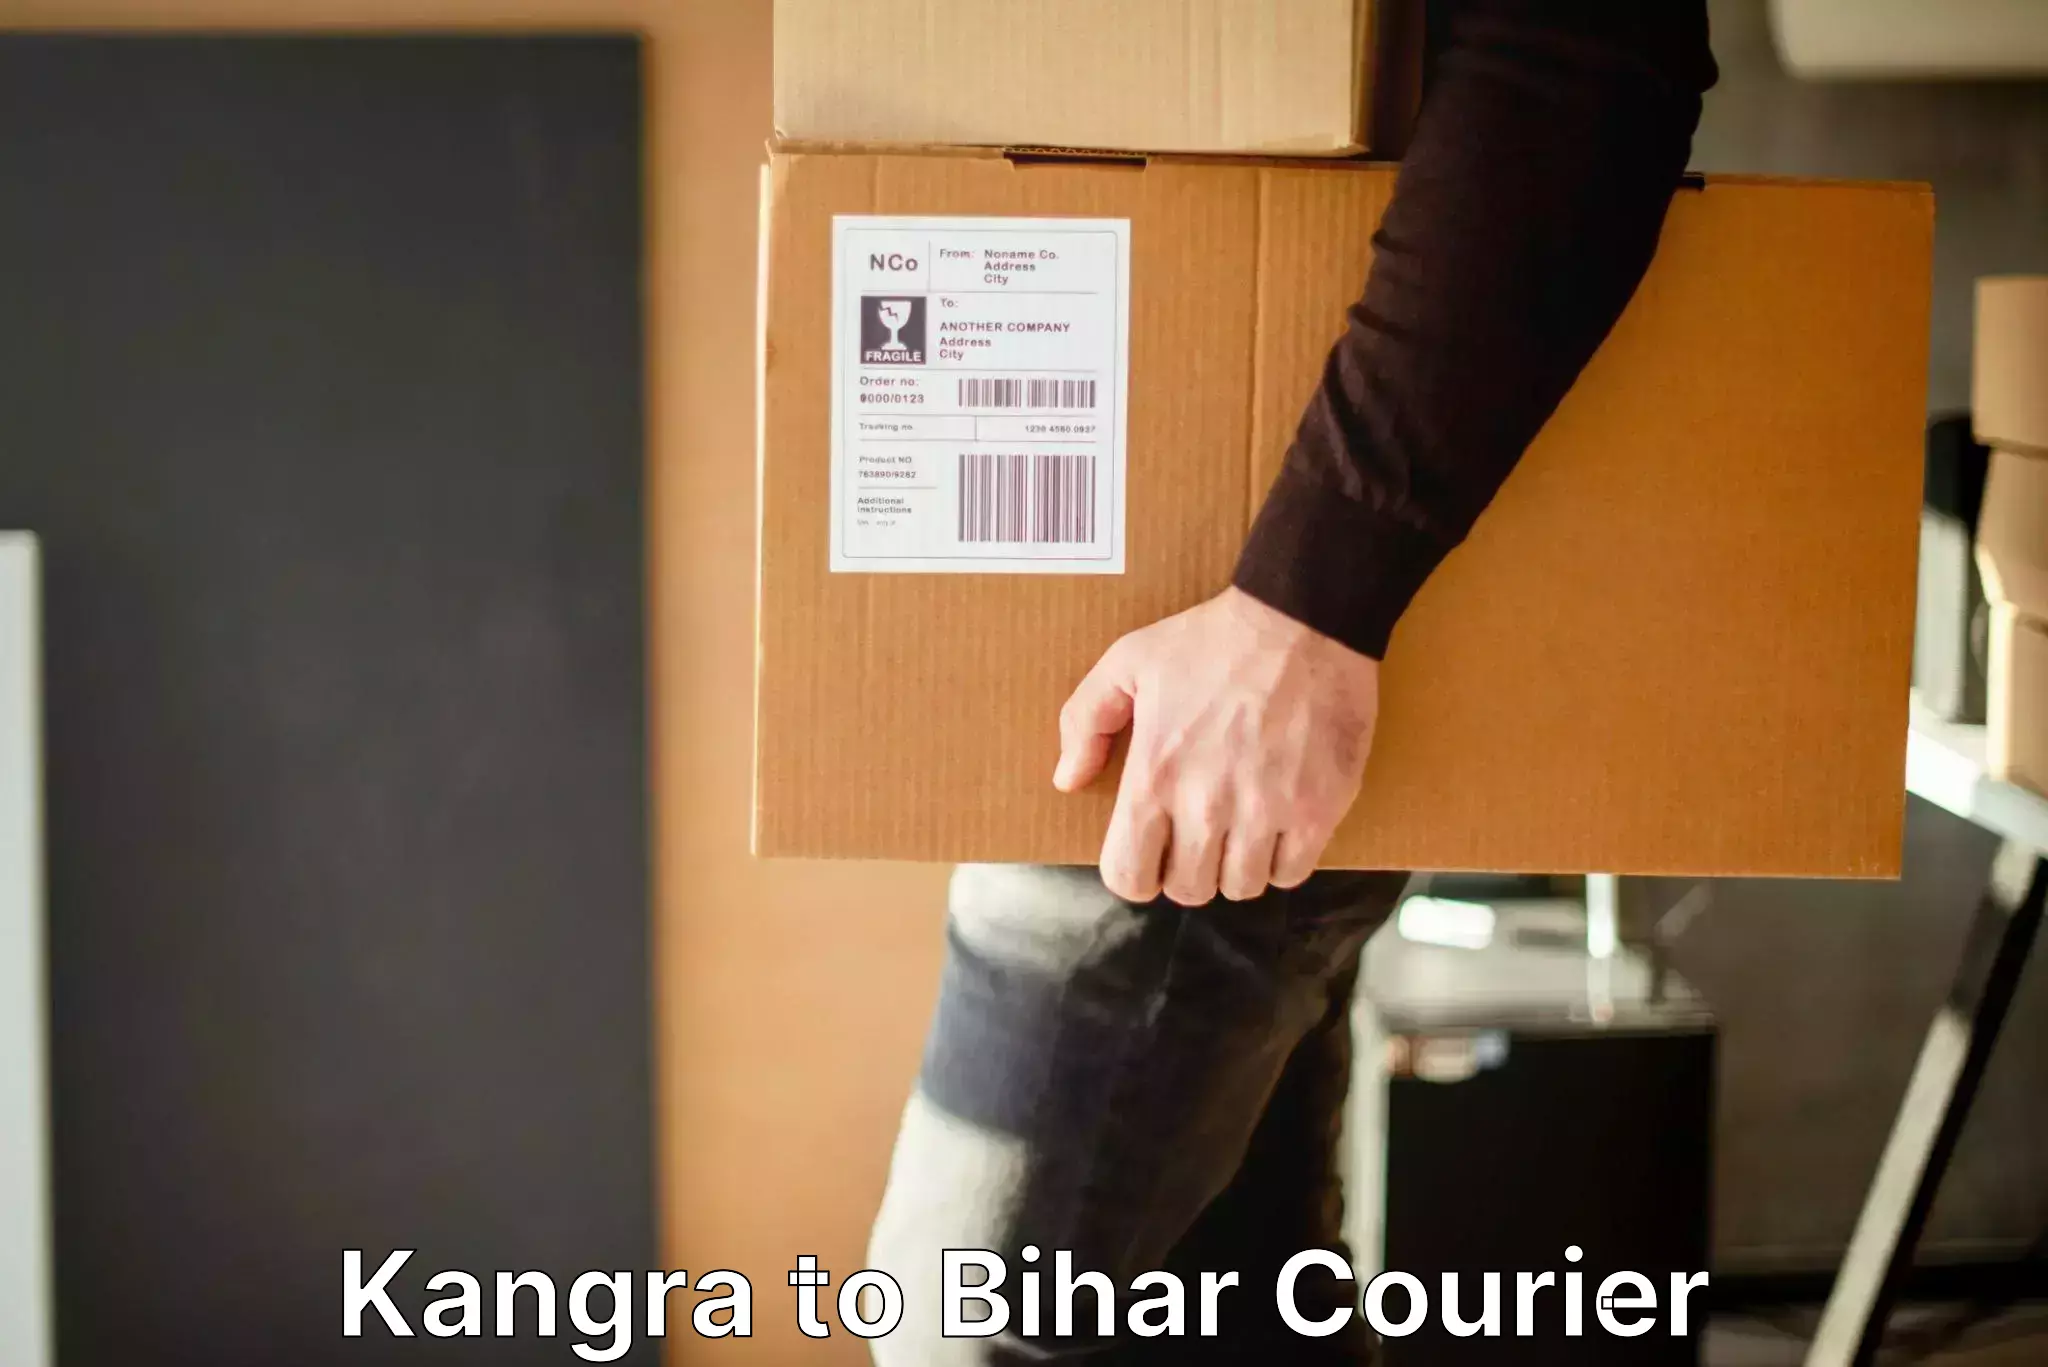 Baggage transport technology Kangra to Pakribarawan